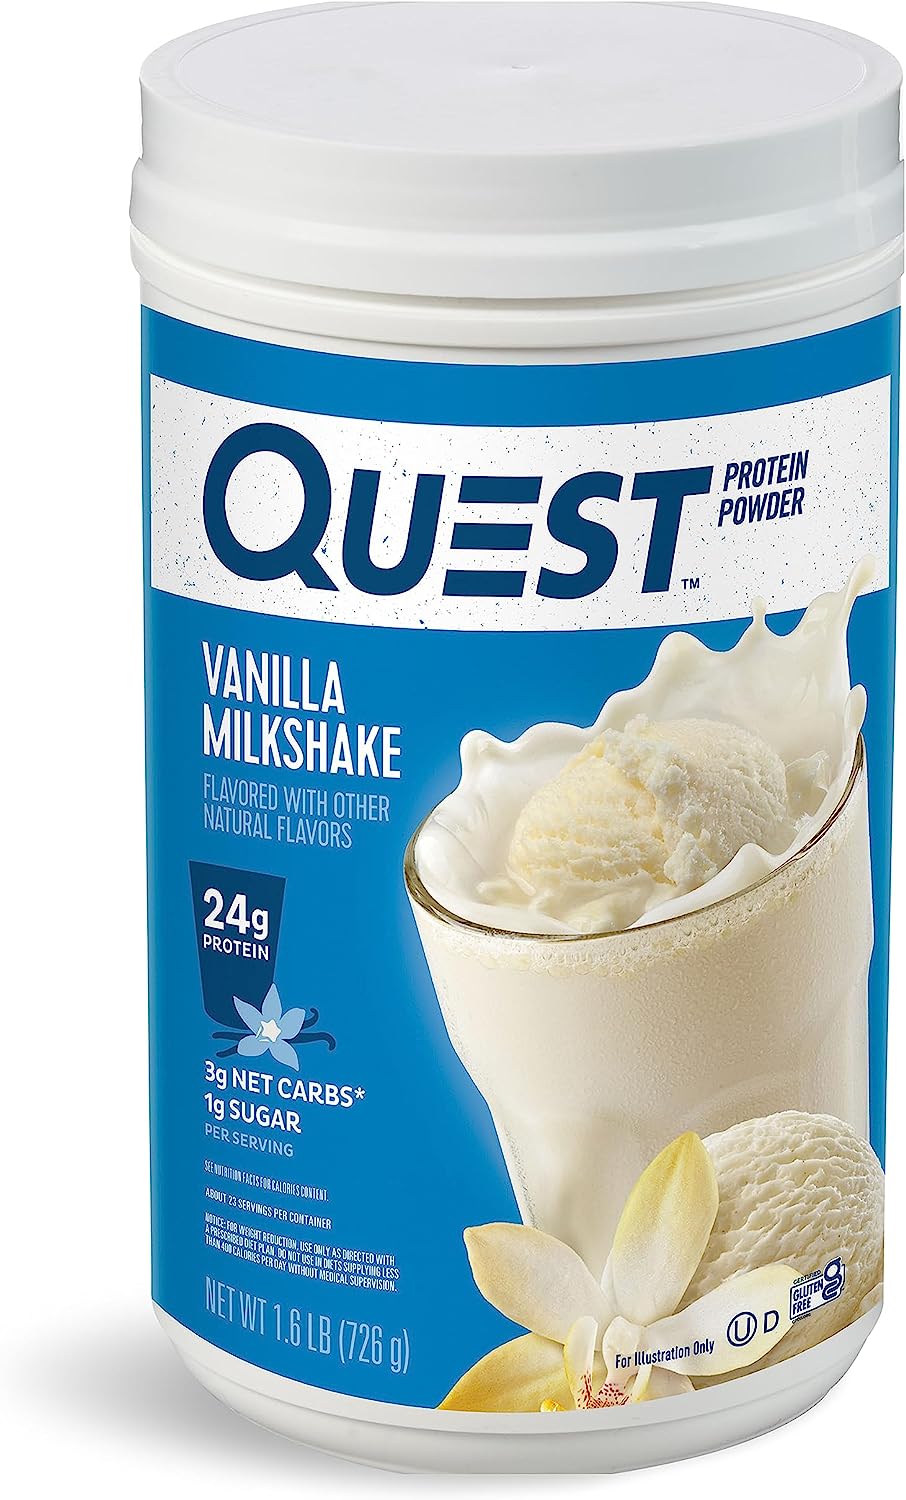 Quest Nutrition Vanilla Milkshake Protein Powder, 24g of Protein, 1g o